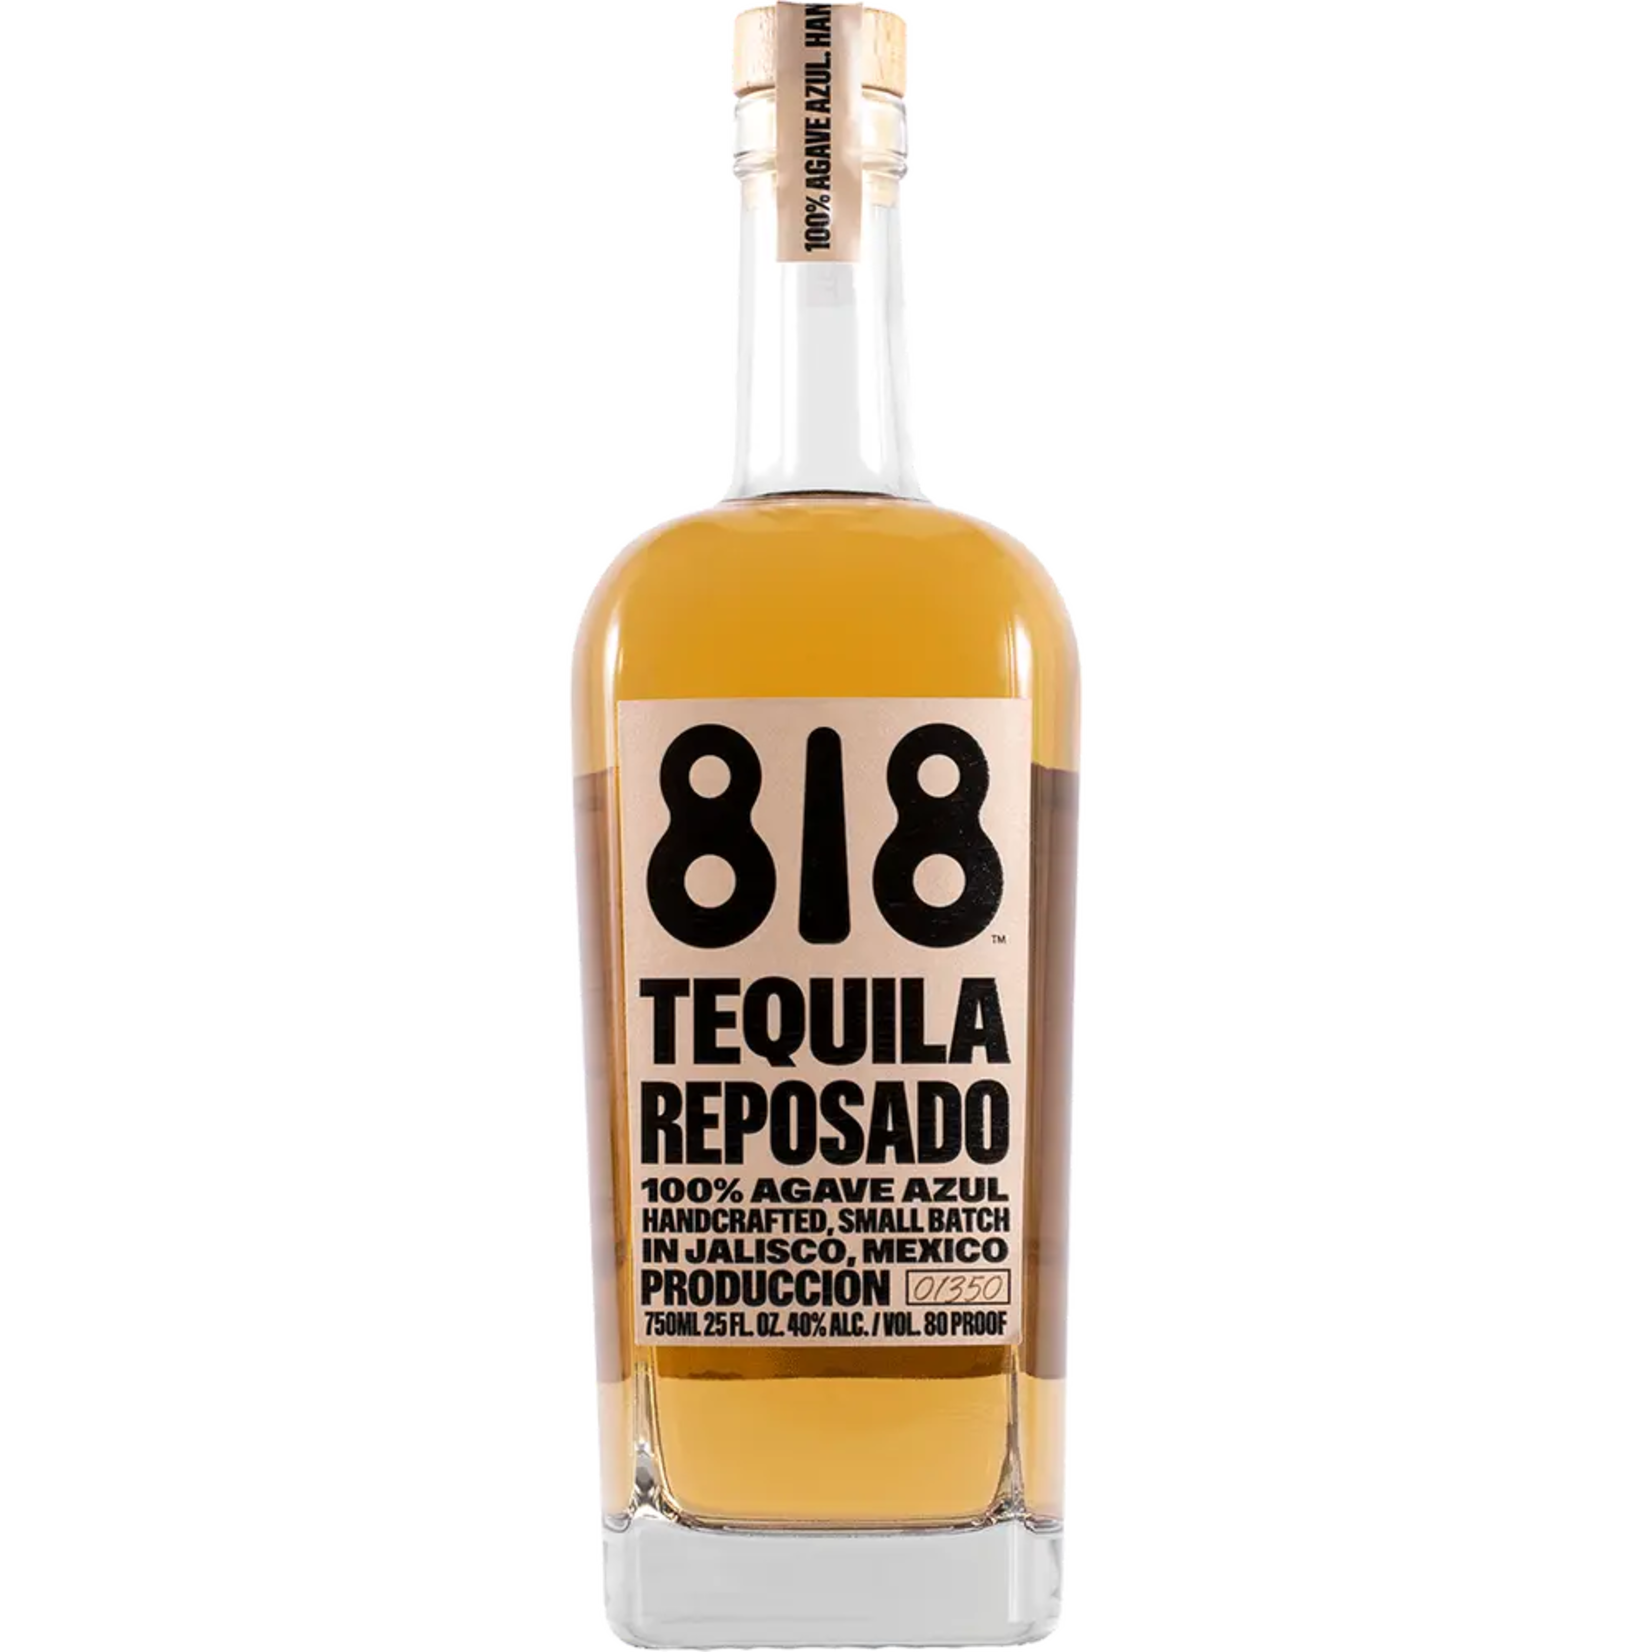 818 Tequila 818 REPOSADO TEQUILA 80PF 750 ML